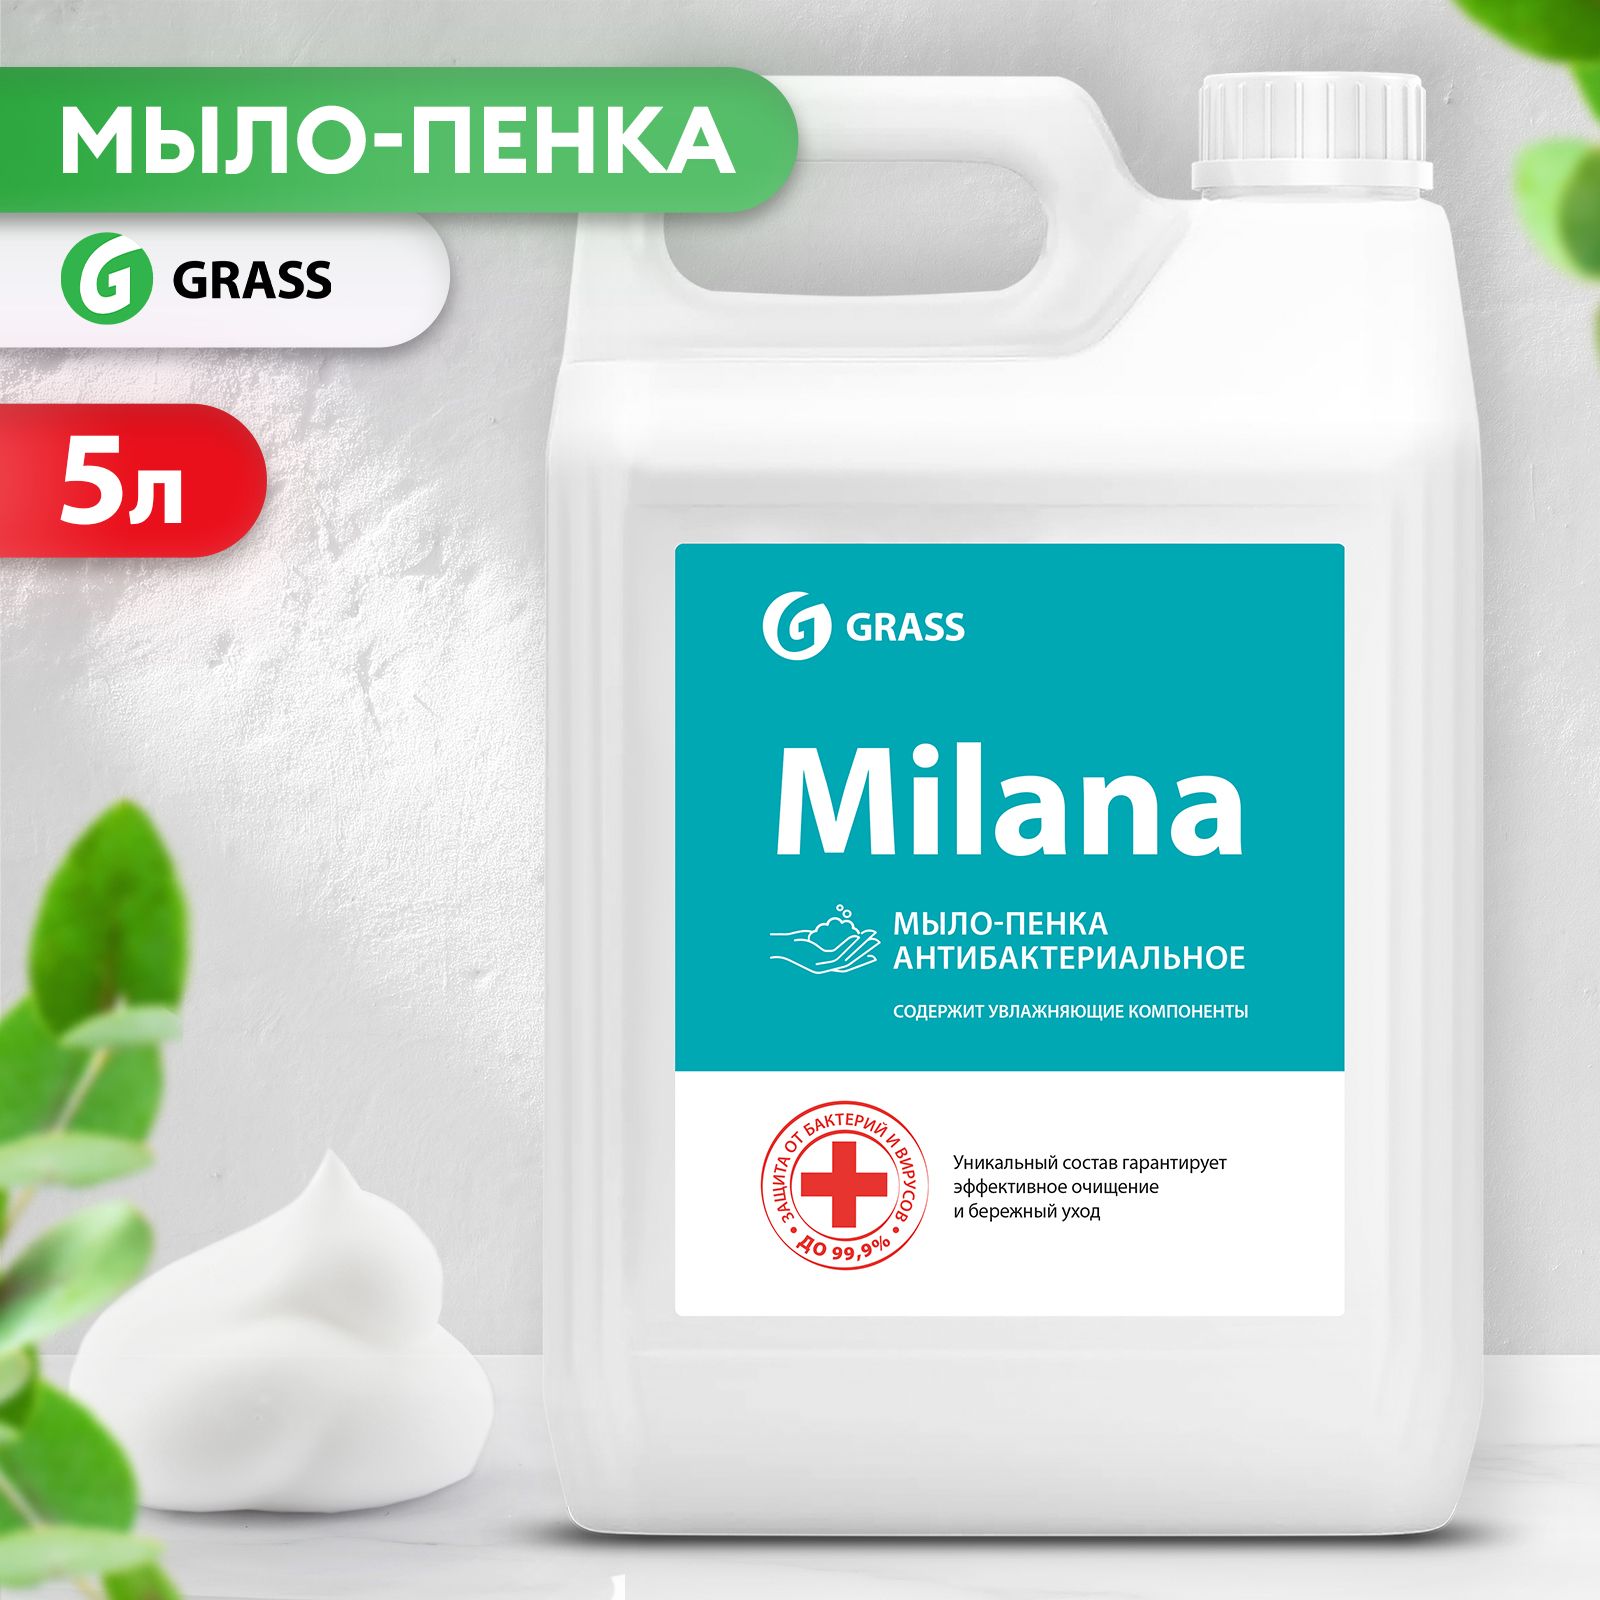 Мыло-пенка"Milana" Антибактериальное 5л